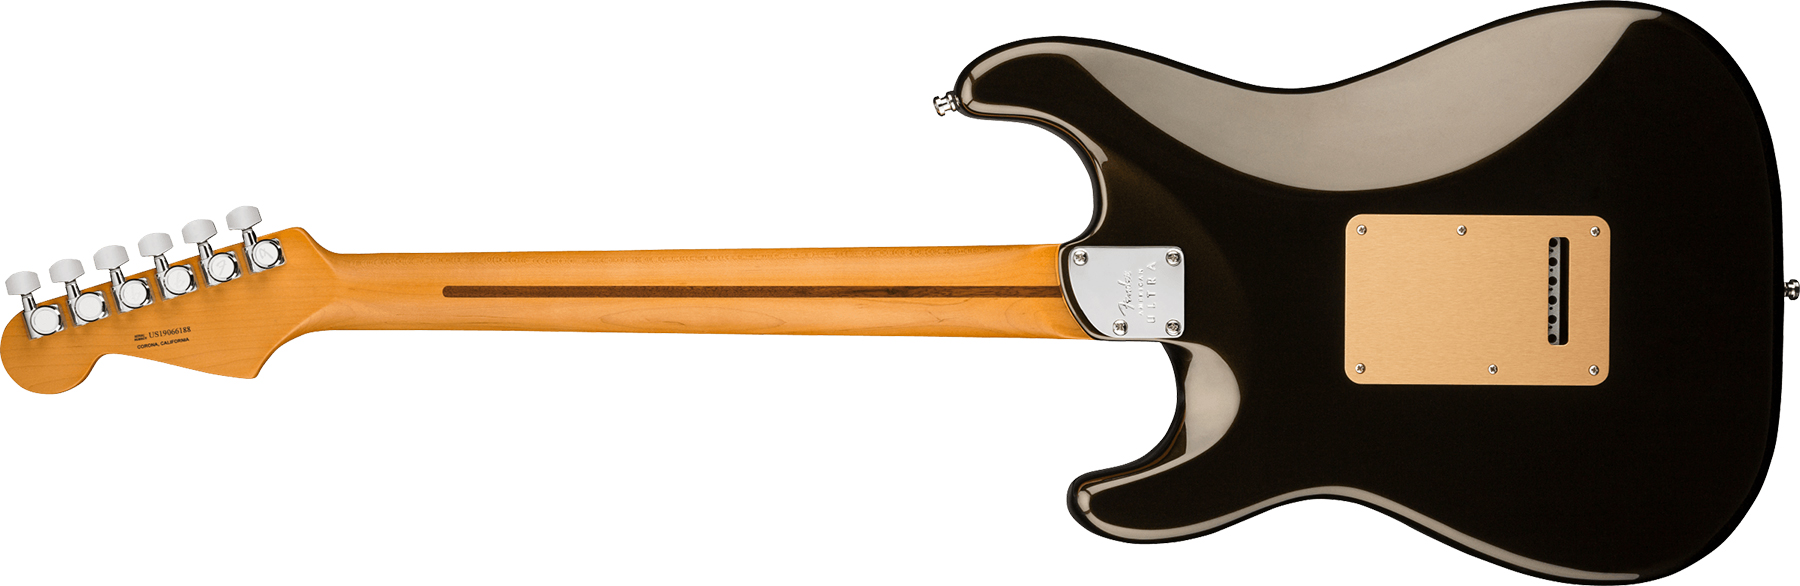 Fender Strat American Ultra 2019 Usa Mn - Texas Tea - E-Gitarre in Str-Form - Variation 1